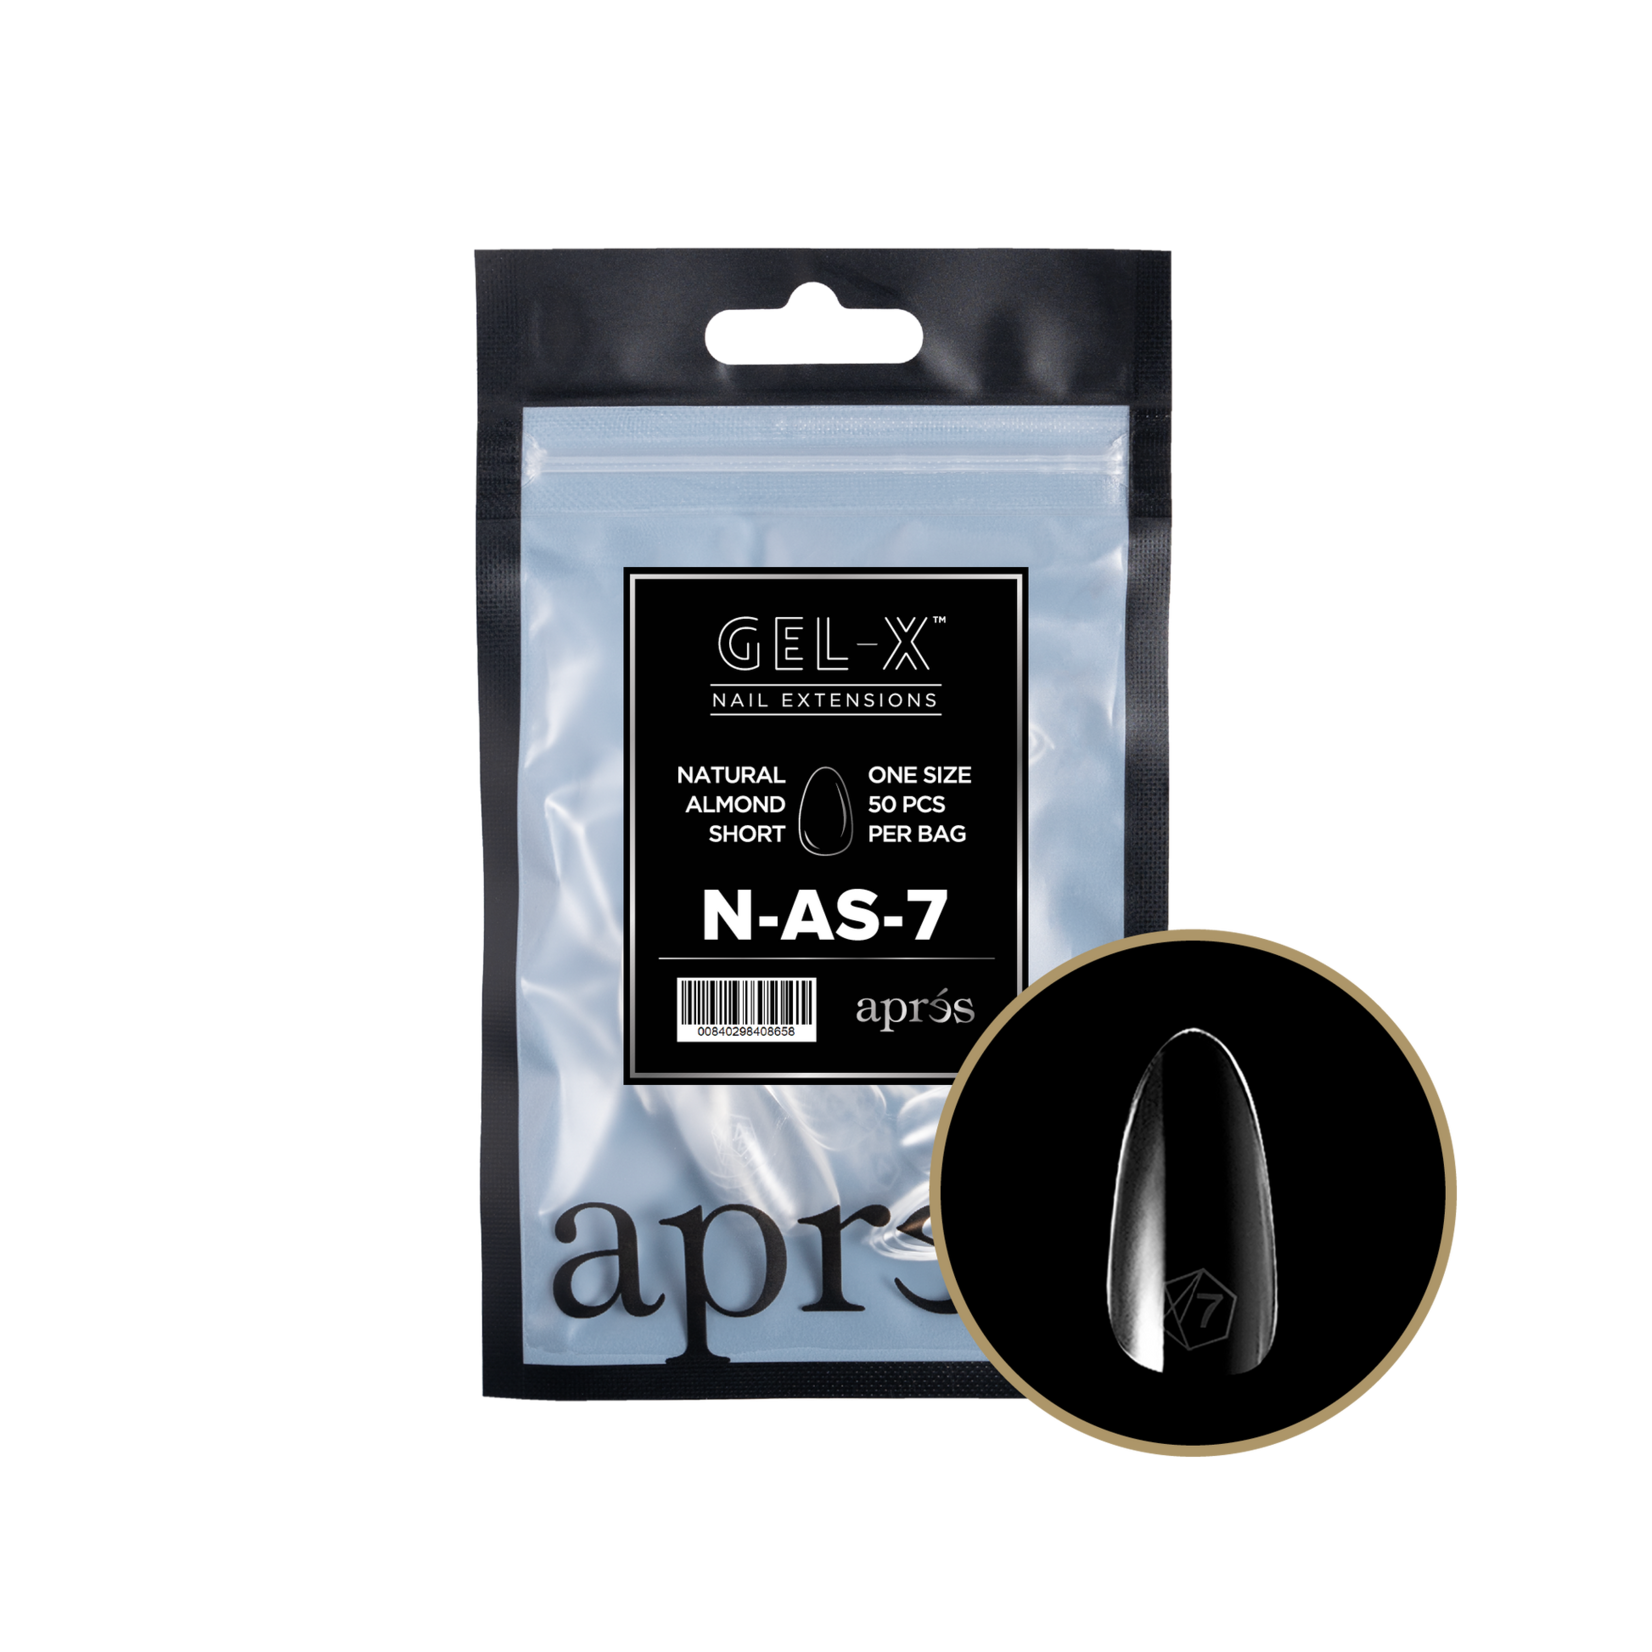 Apres Apres - Refill Bags - Natural - Almond Short - #7